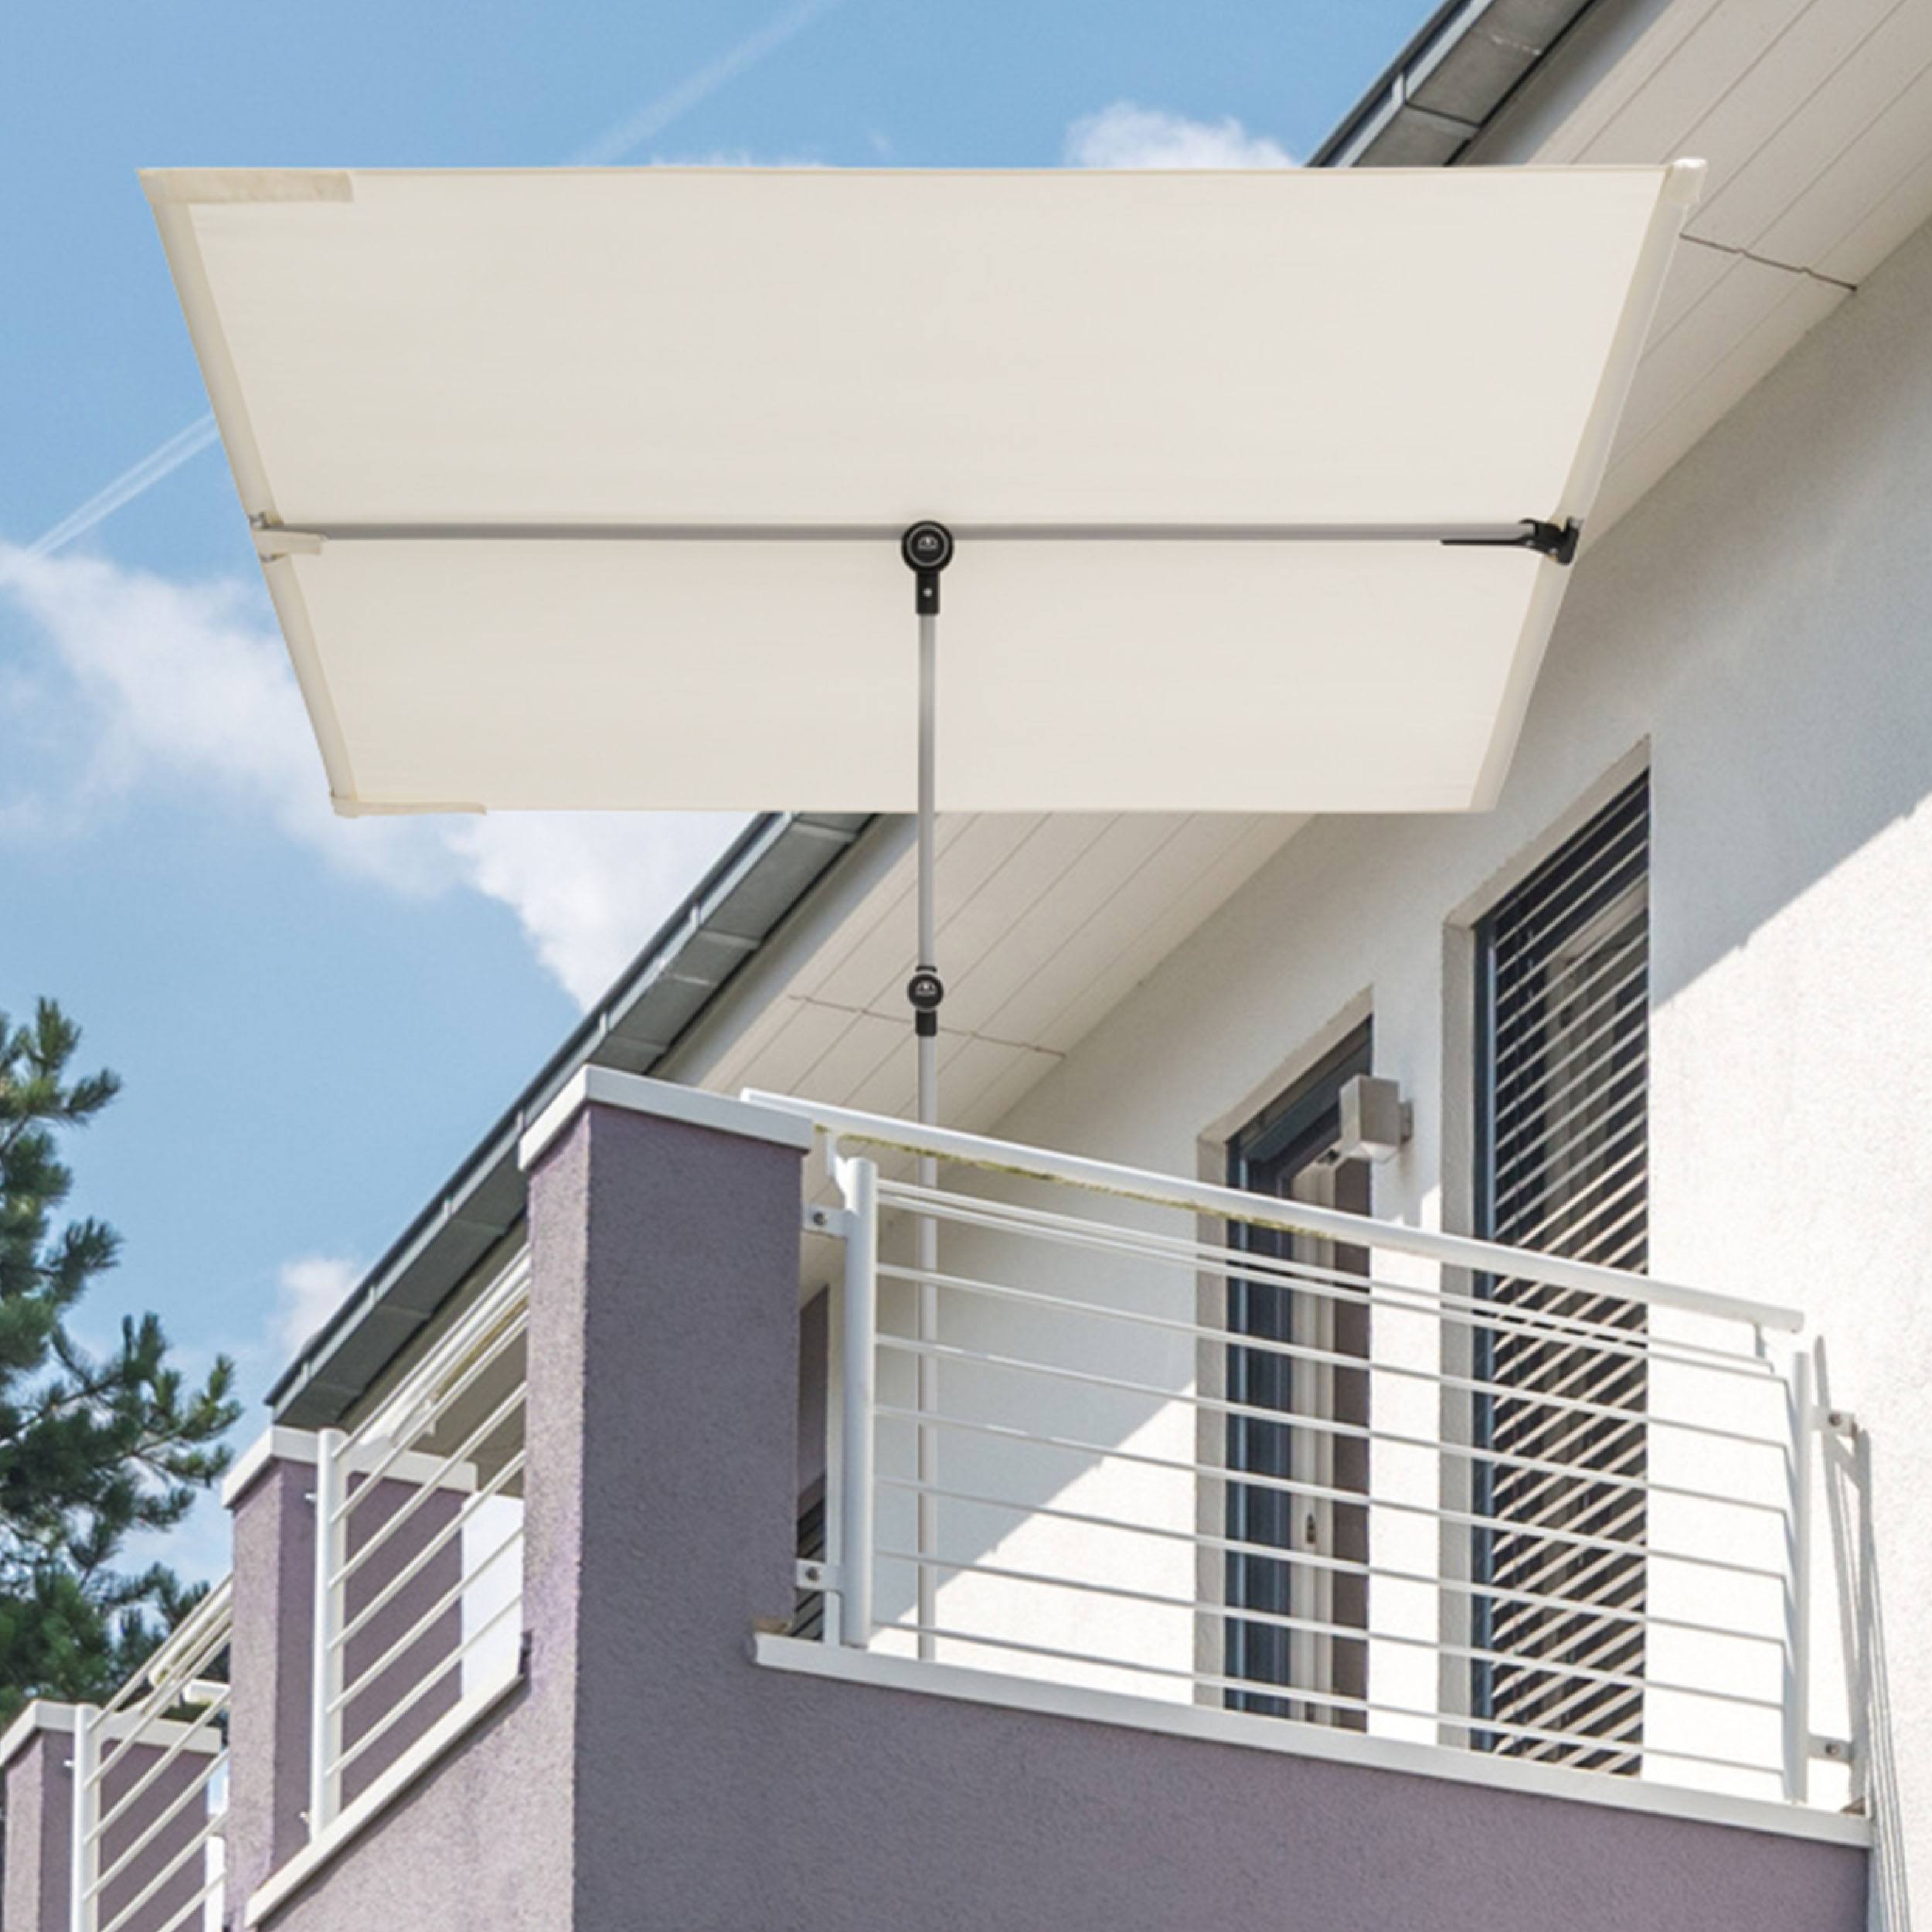 Active cache-vue de balcon Protection visuelle et solaire sans pied de parasol